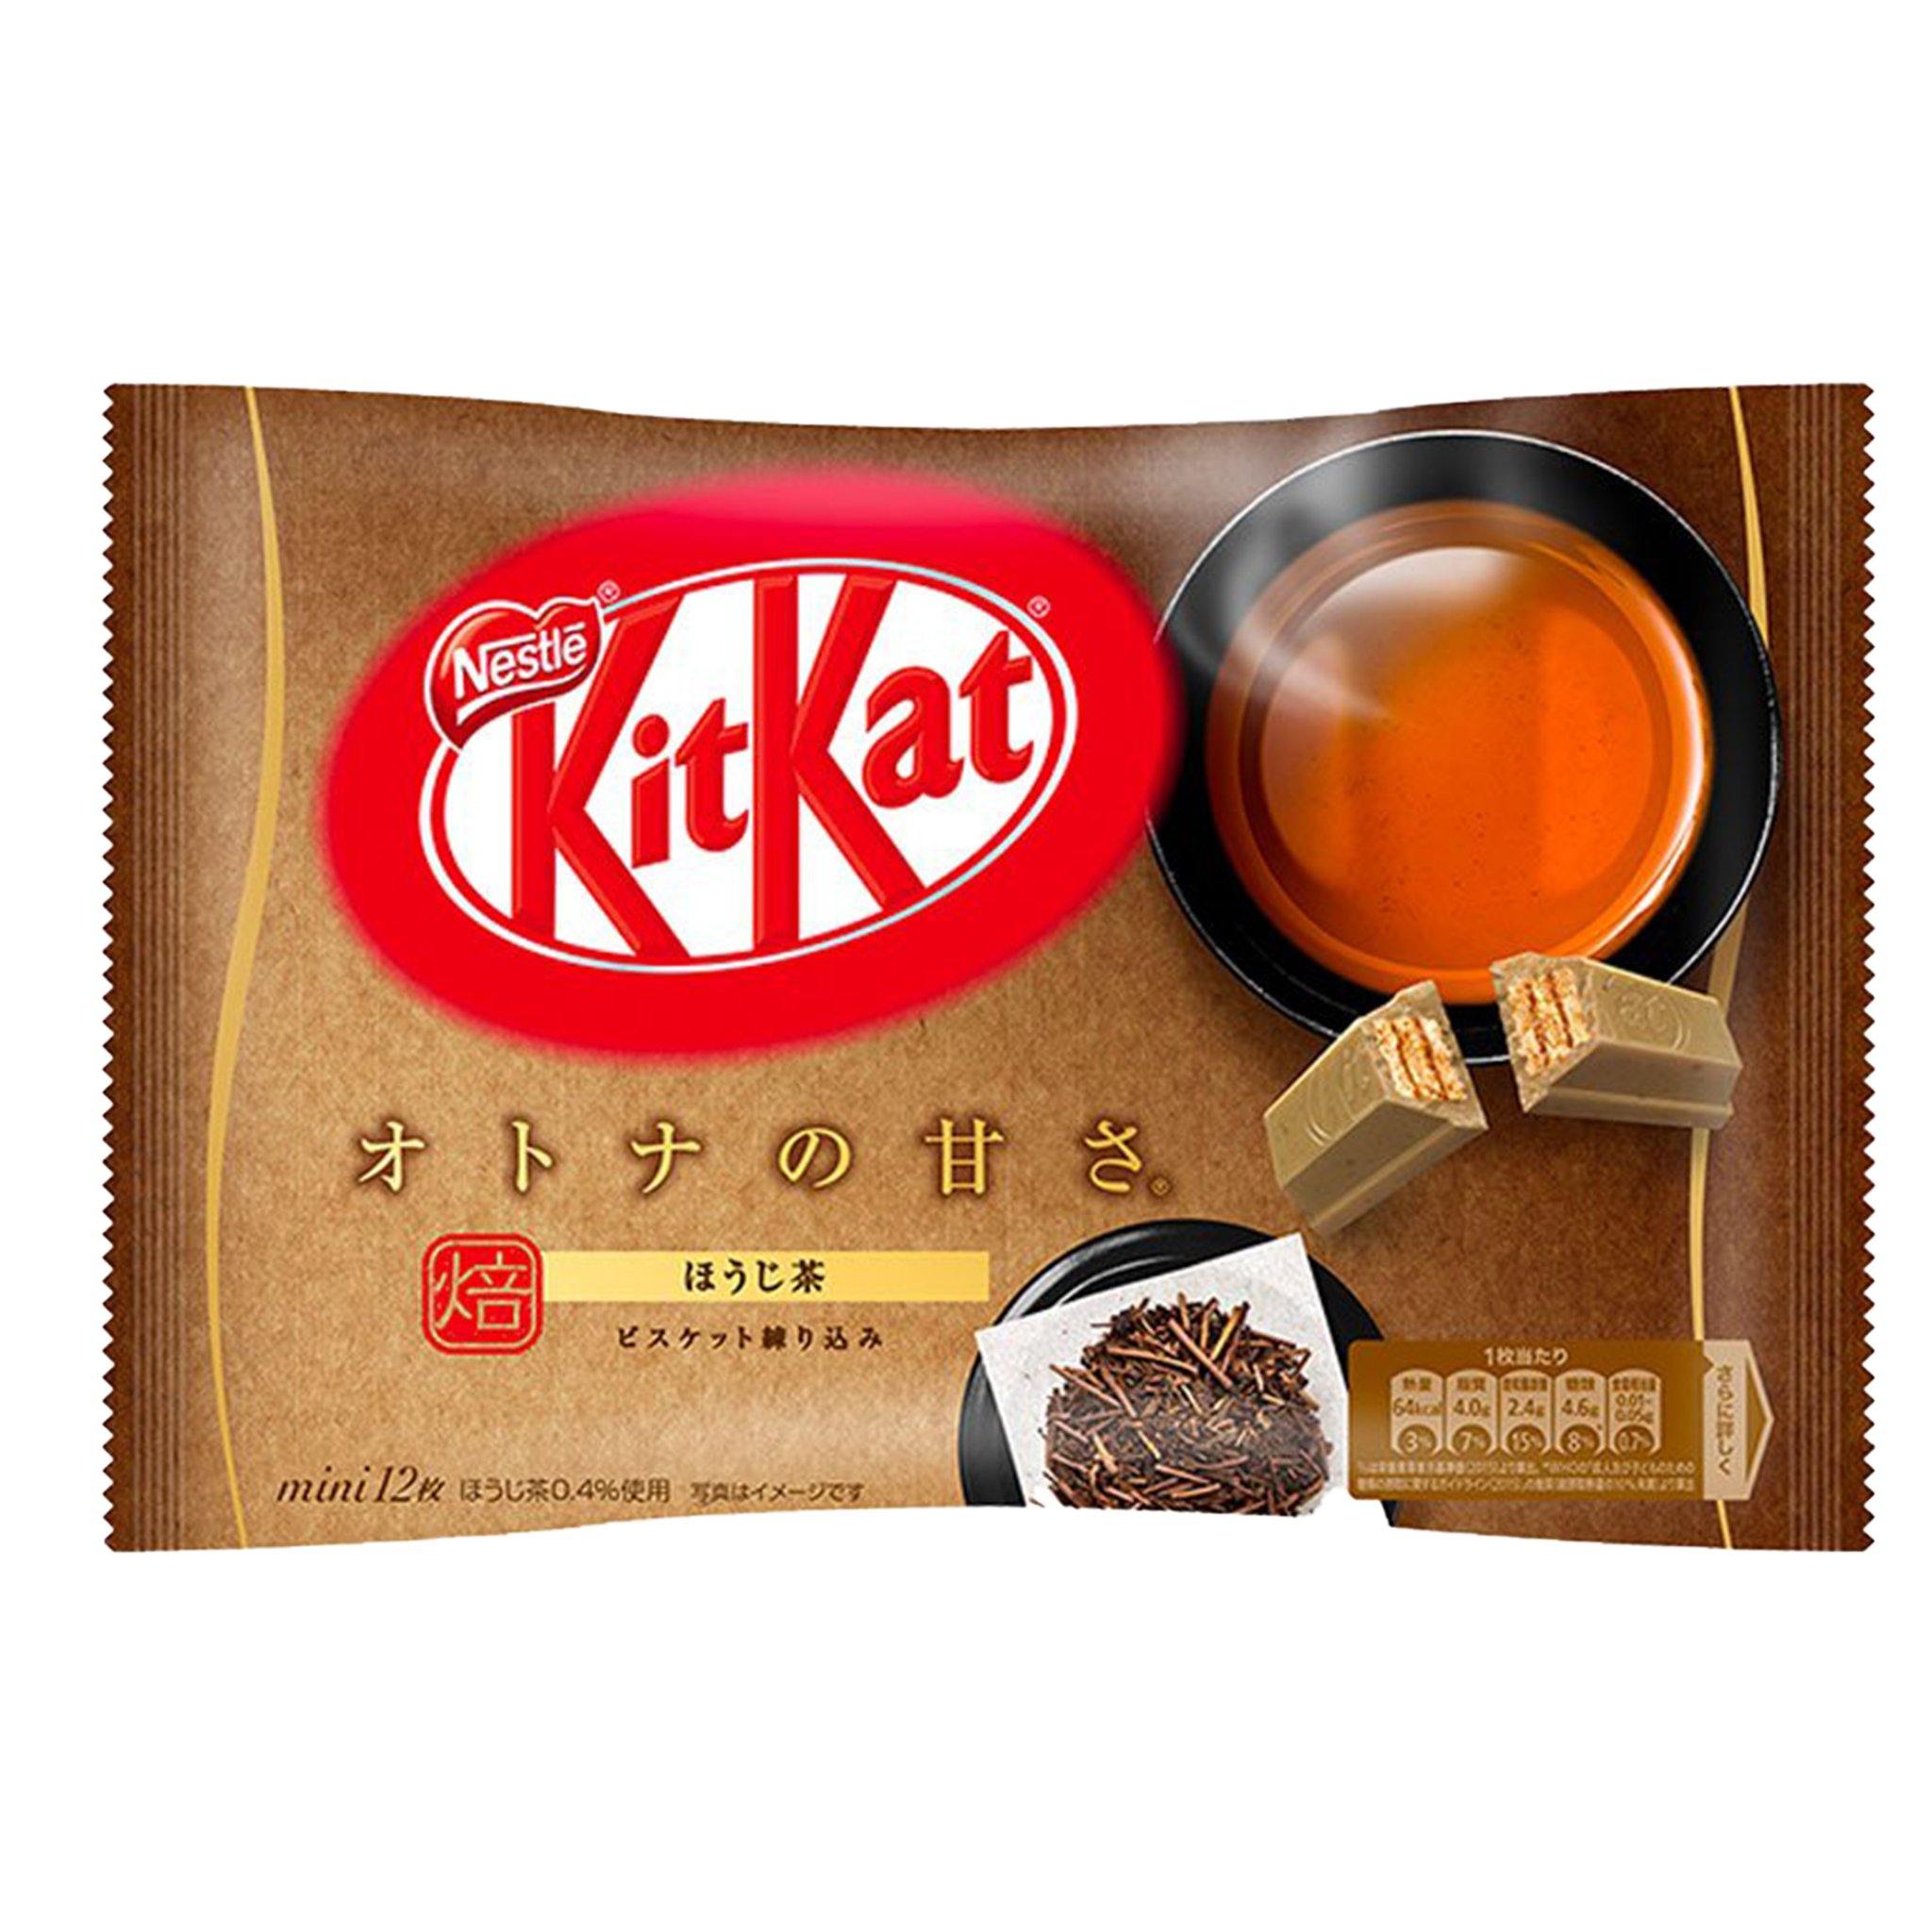 Kit Kat Hojicha Roasted Tea - Japan - Sweet Exotics